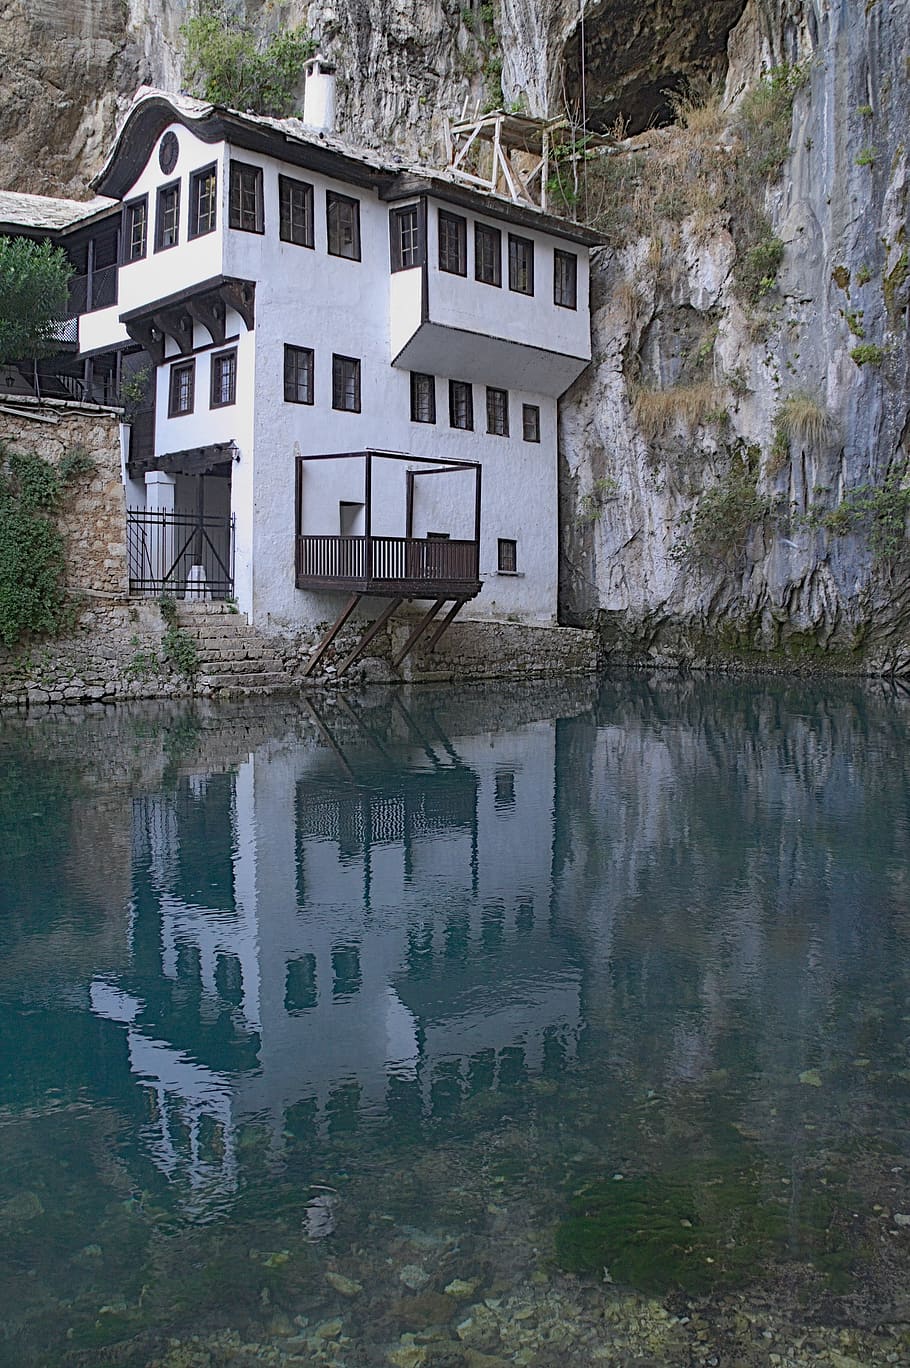 bosnia y herzegovina, herzegovina, río, fuente, fuente de buna, blagaj, convento derviche, estructura construida, arquitectura, agua